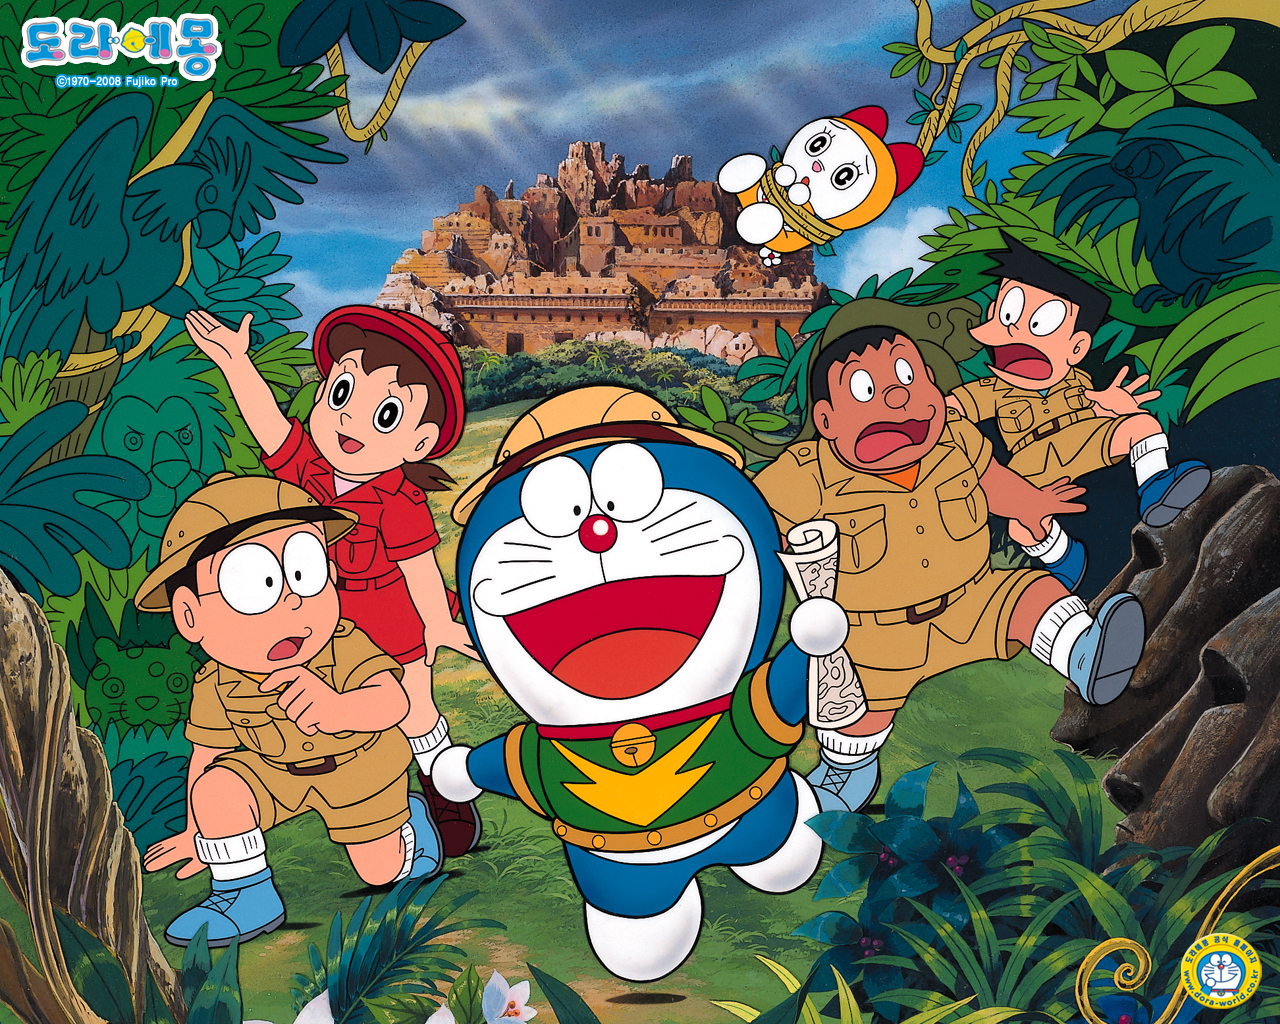 Doraemon wallpapers sẽ khiến bạn bật cười ngay từ lần đầu nhìn thấy. Những hình ảnh ấn tượng và đầy sáng tạo sẽ giúp bạn tạo ra không gian độc đáo và thú vị. Khám phá ngay bộ sưu tập hình nền Doraemon độc lạ này và tận hưởng sự thú vị.